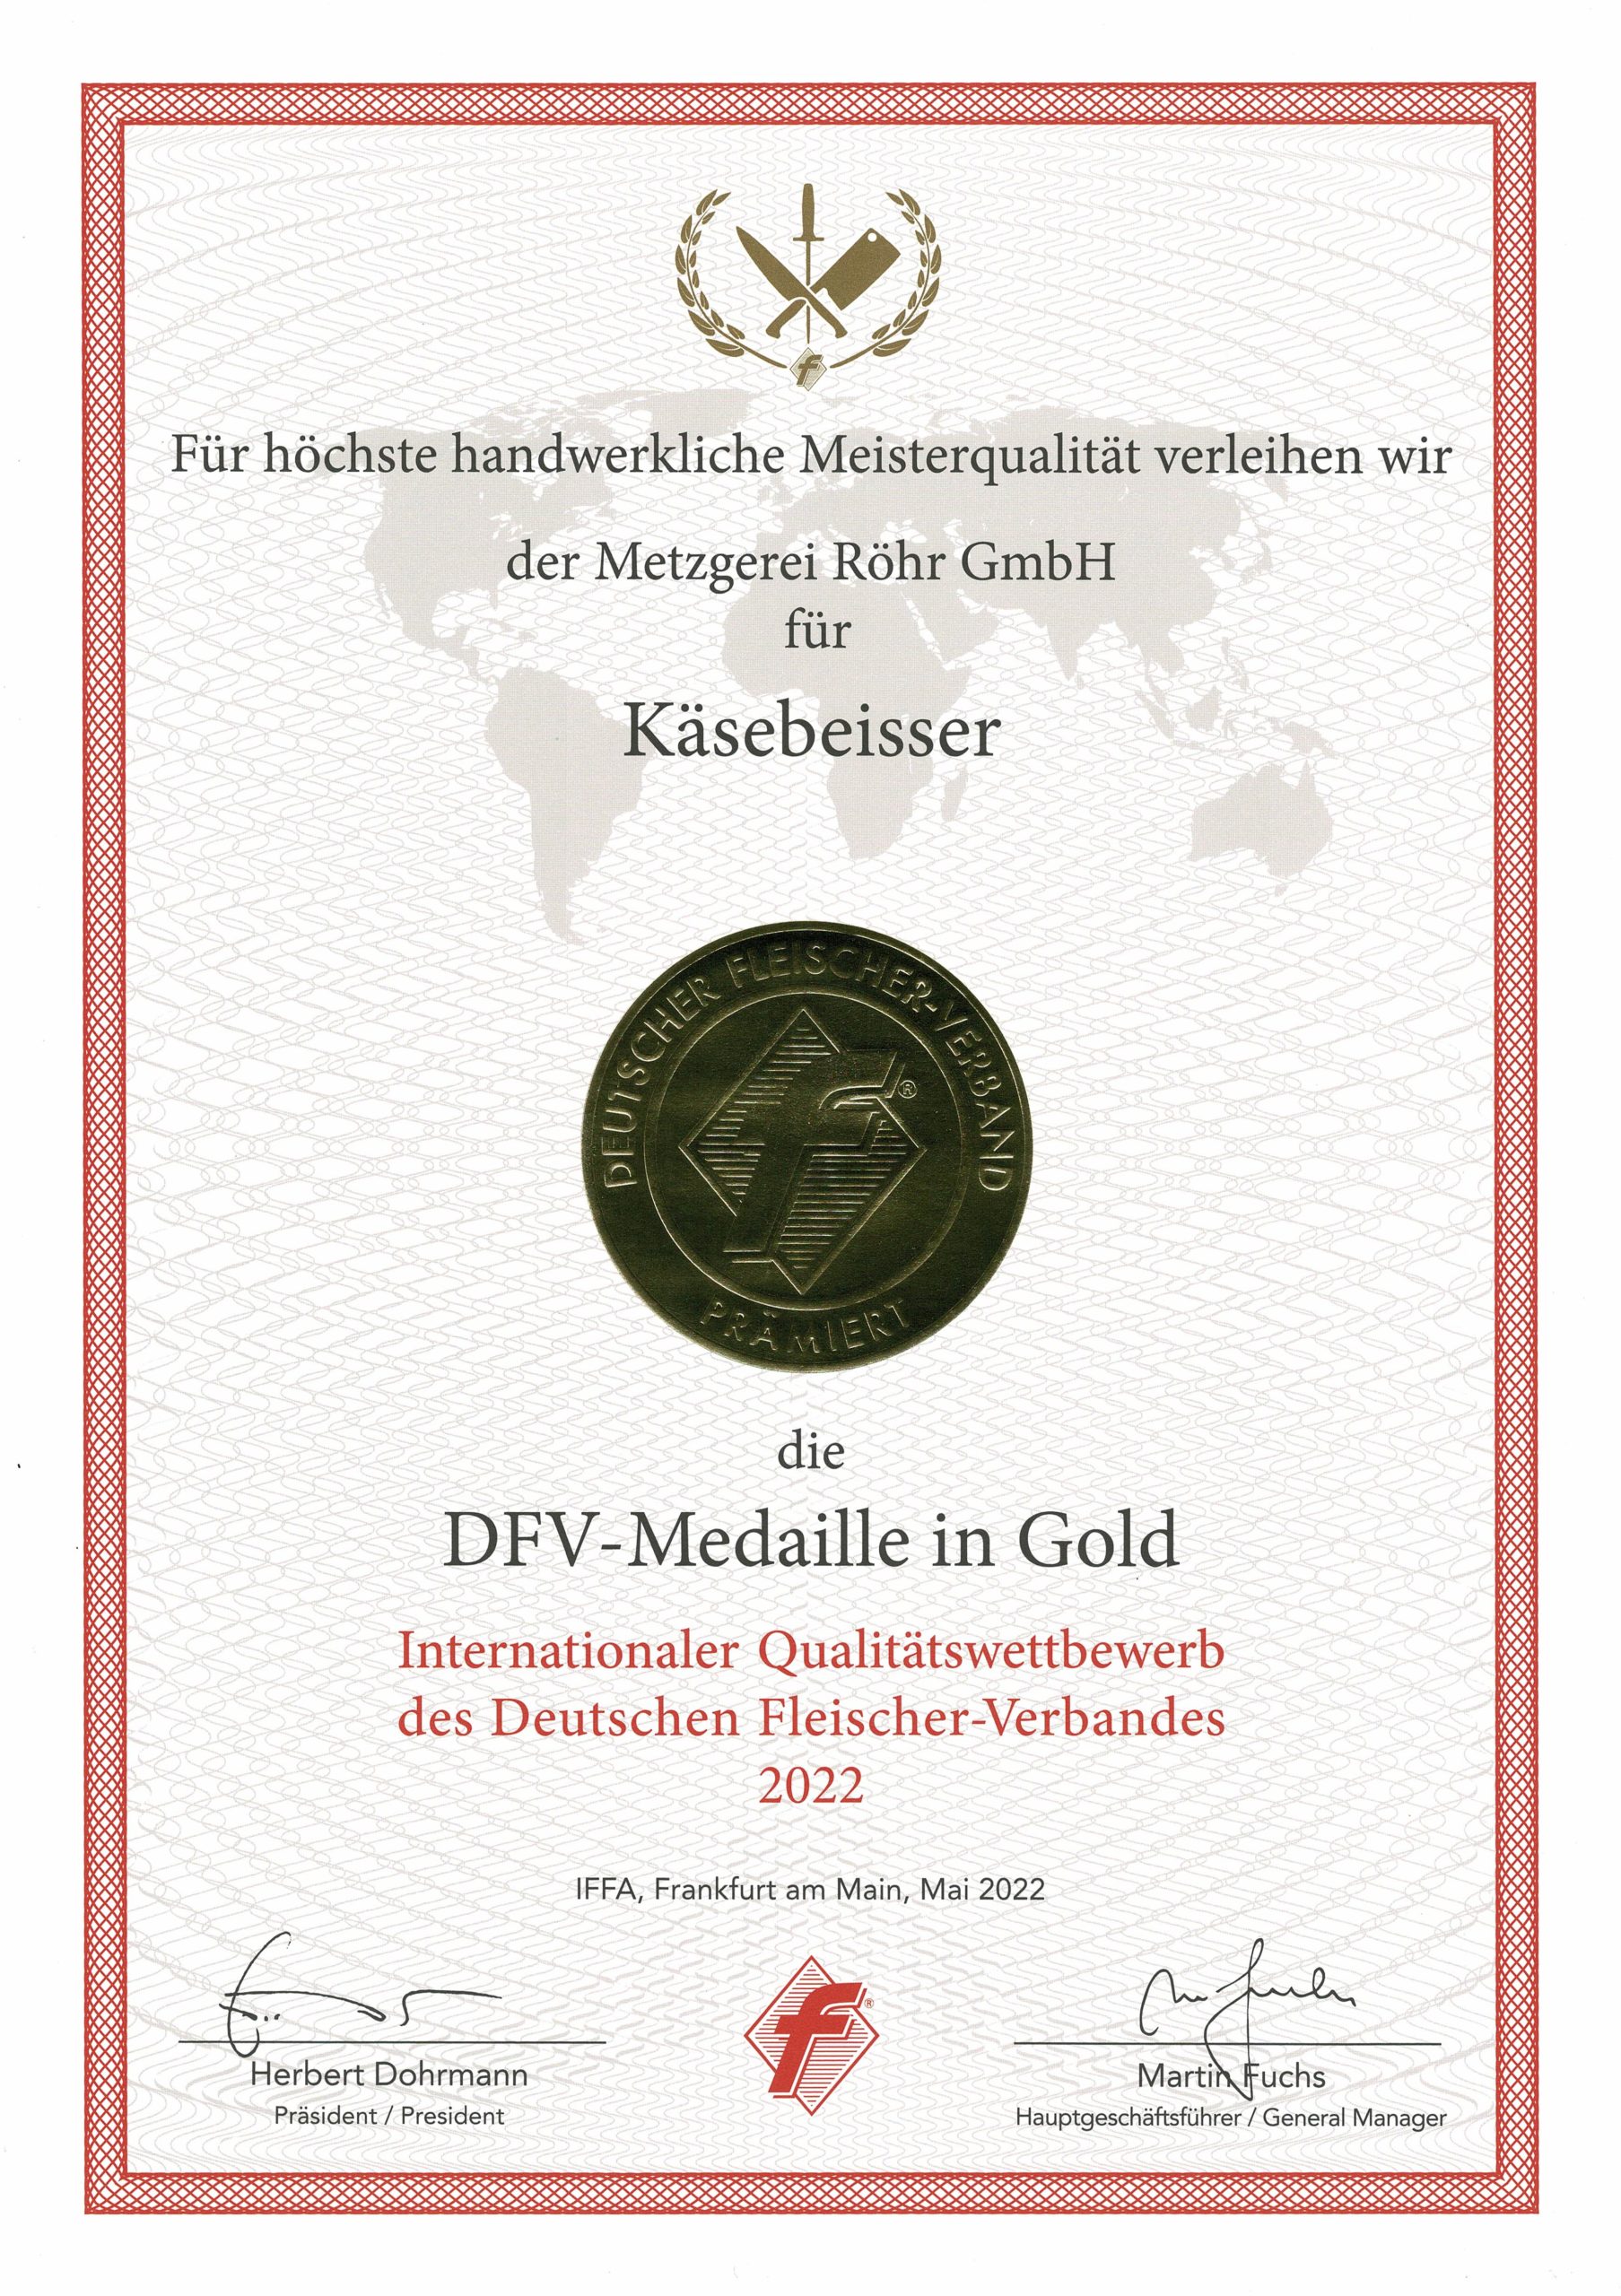 DFV-Medaille in Gold für Käsebeisser